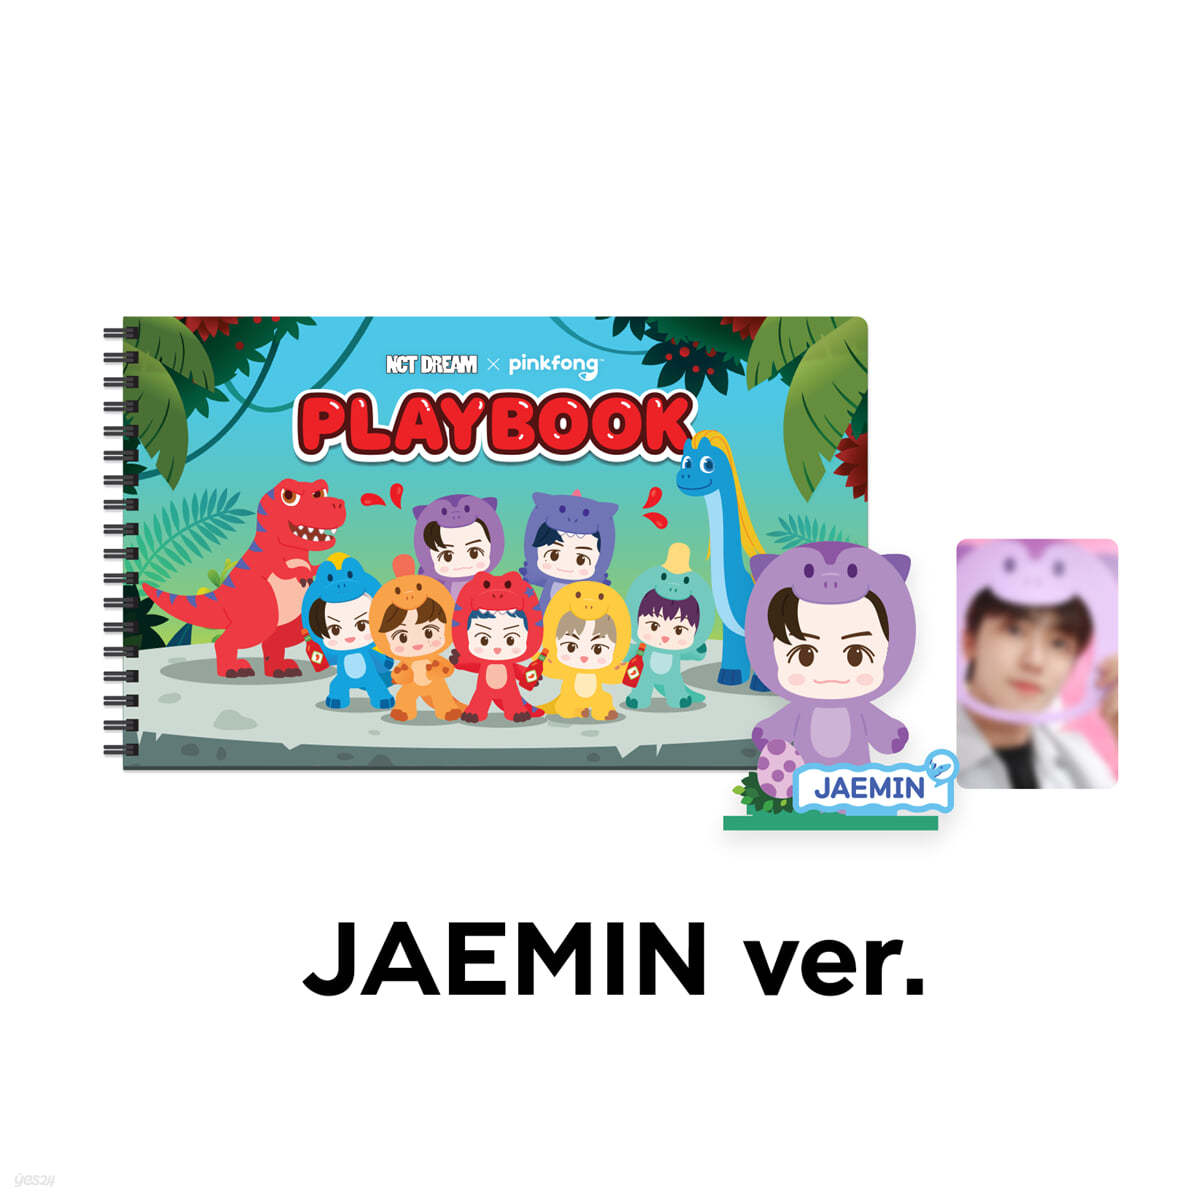 [JAEMIN] PLAYBOOK SET - NCT DREAM X PINKFONG